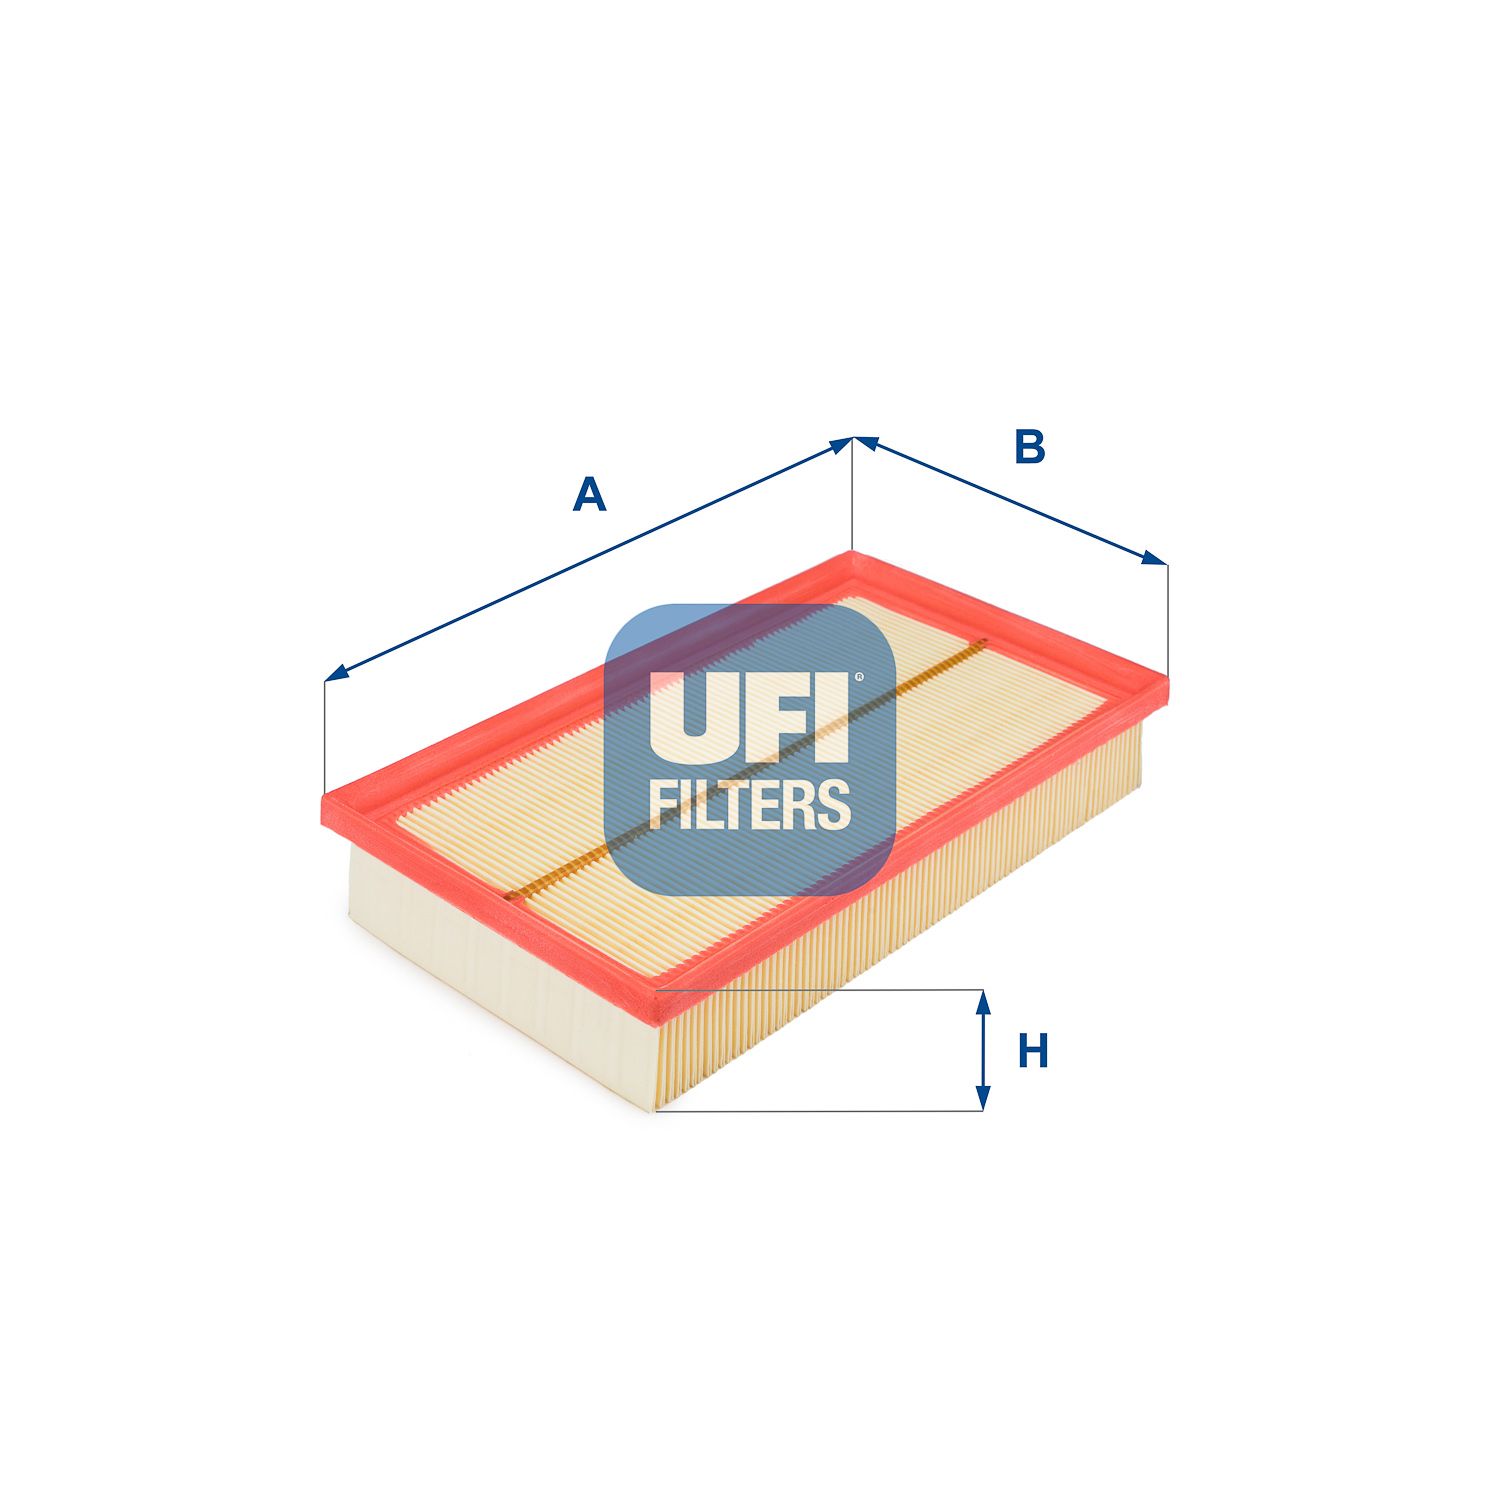 Vzduchový filtr UFI 30.101.00